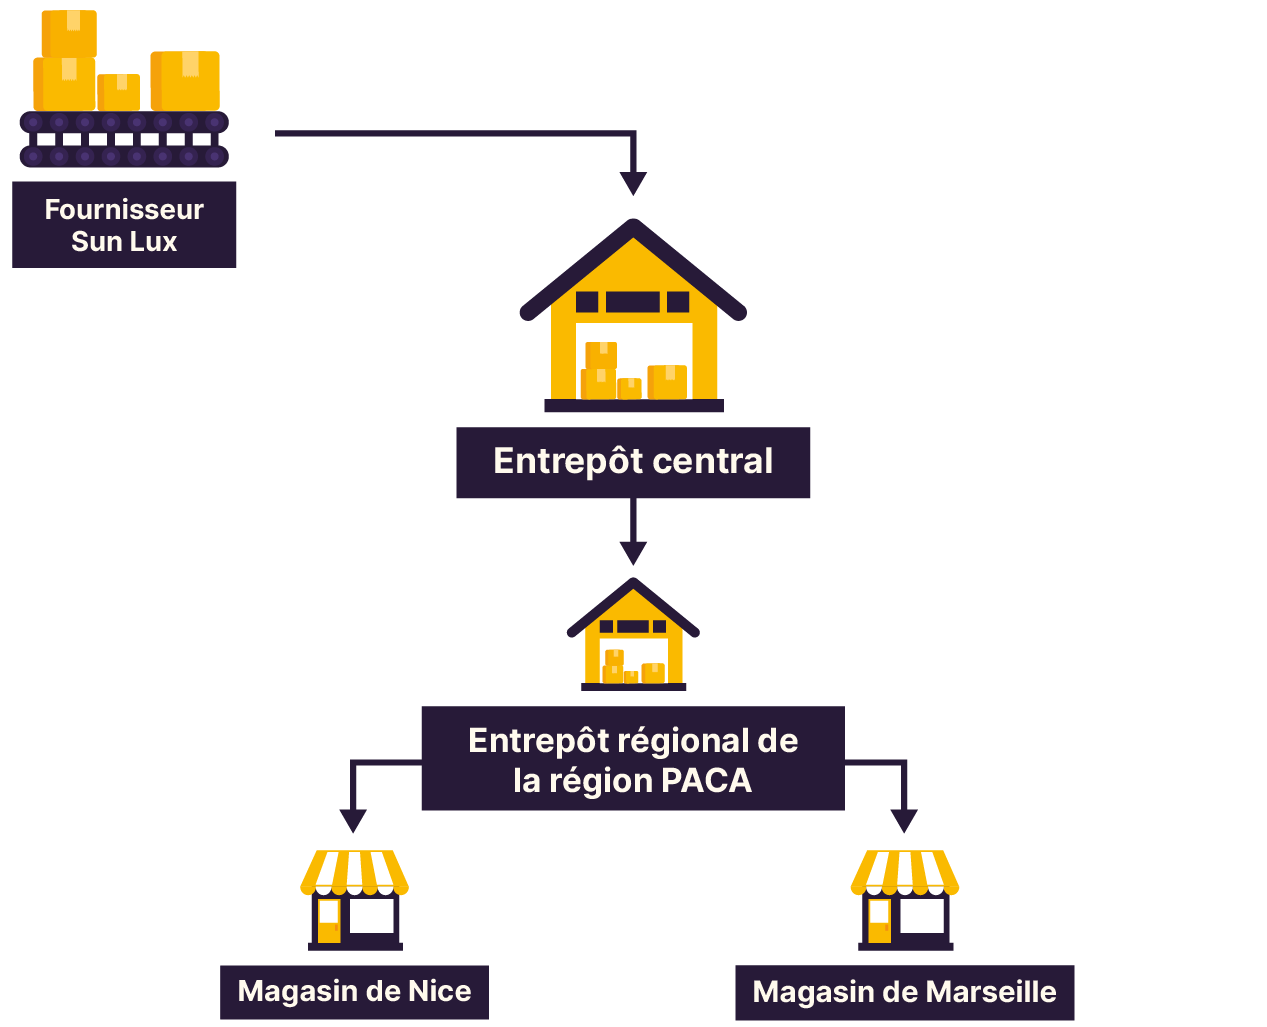 Les 5 éléments du réseau sont reliés entre eux par des flèches de haut en bas : le fournisseur, l'entrepôt central, l'entrepôt régional PACA puis les magasins de Nice et Marseille.